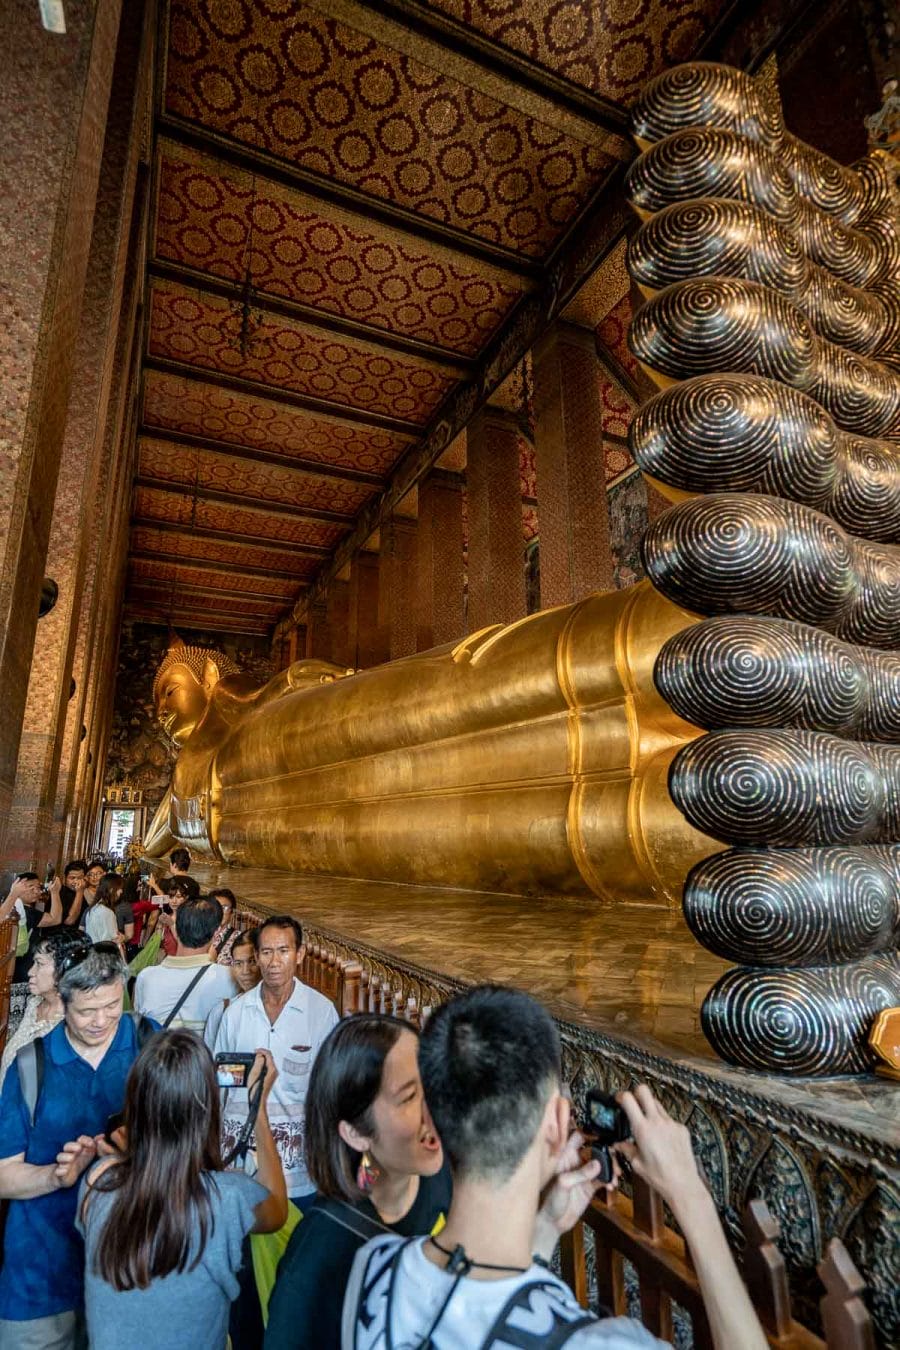 The huge reclining Buddha statue at Wat Pho in Bangkok